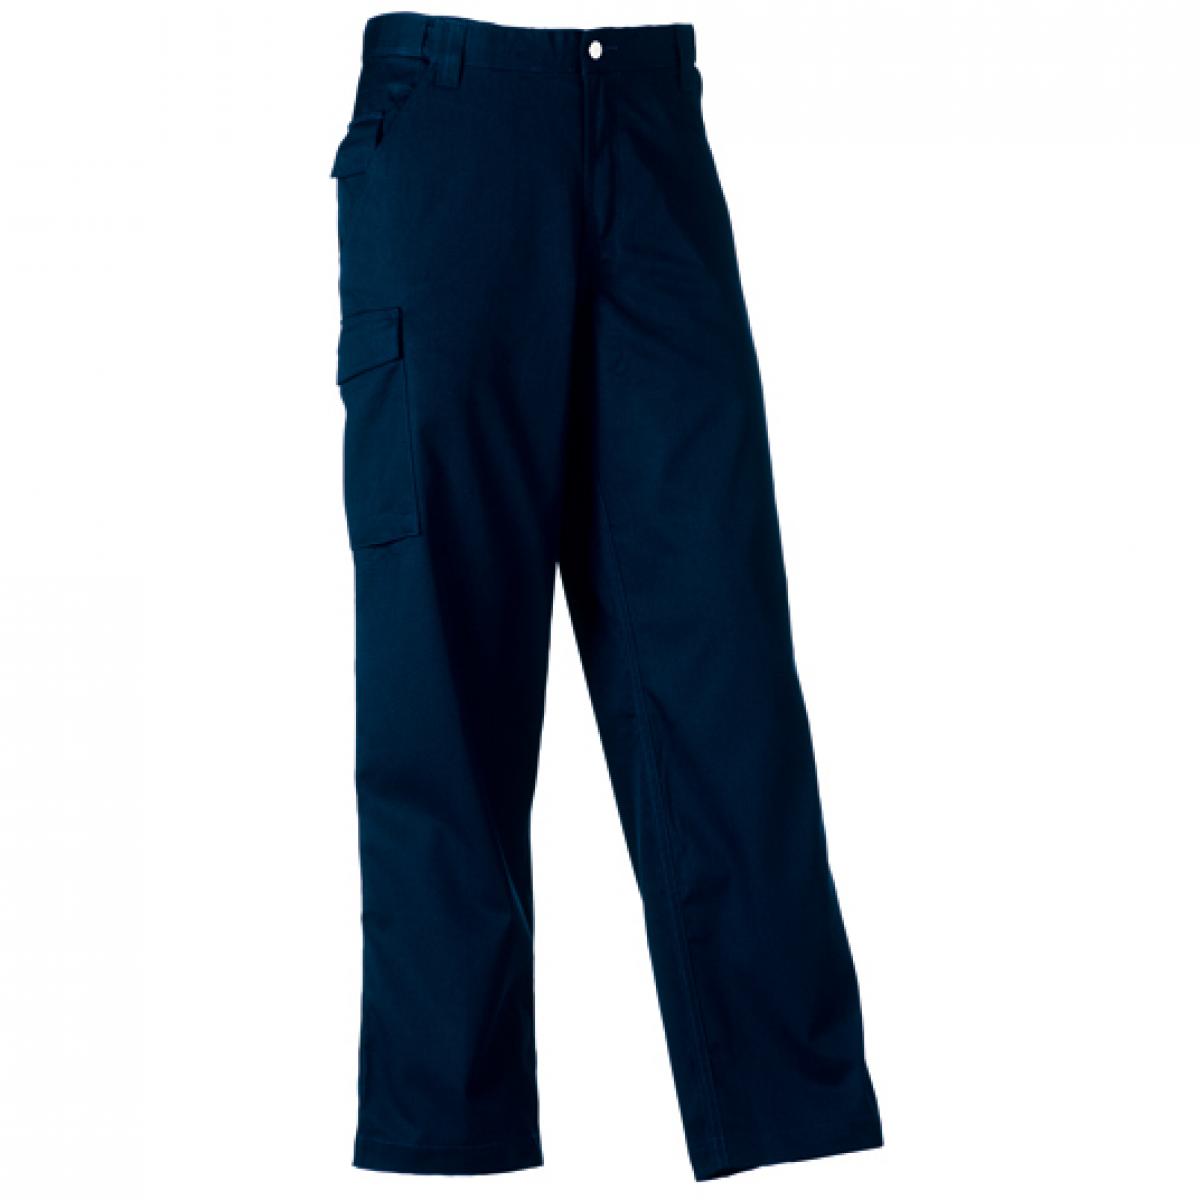 Hersteller: Russell Herstellernummer: R-001M-0 Artikelbezeichnung: Workwear-Hose aus Polyester-/Baumwoll-Twill Farbe: French Navy